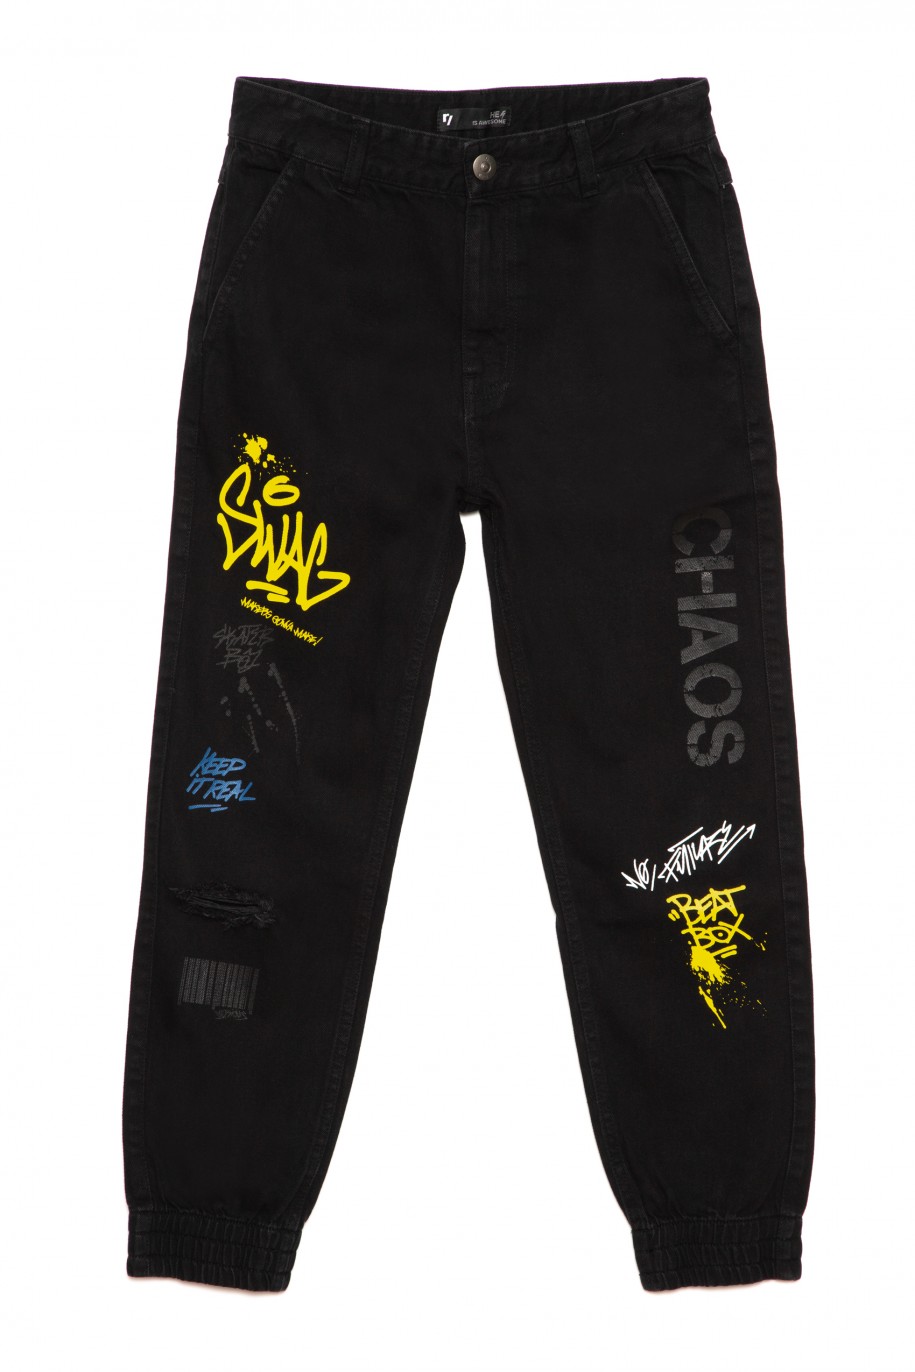 Czarne jeansy typu jogger z nadrukami dla chłopaka - 33463